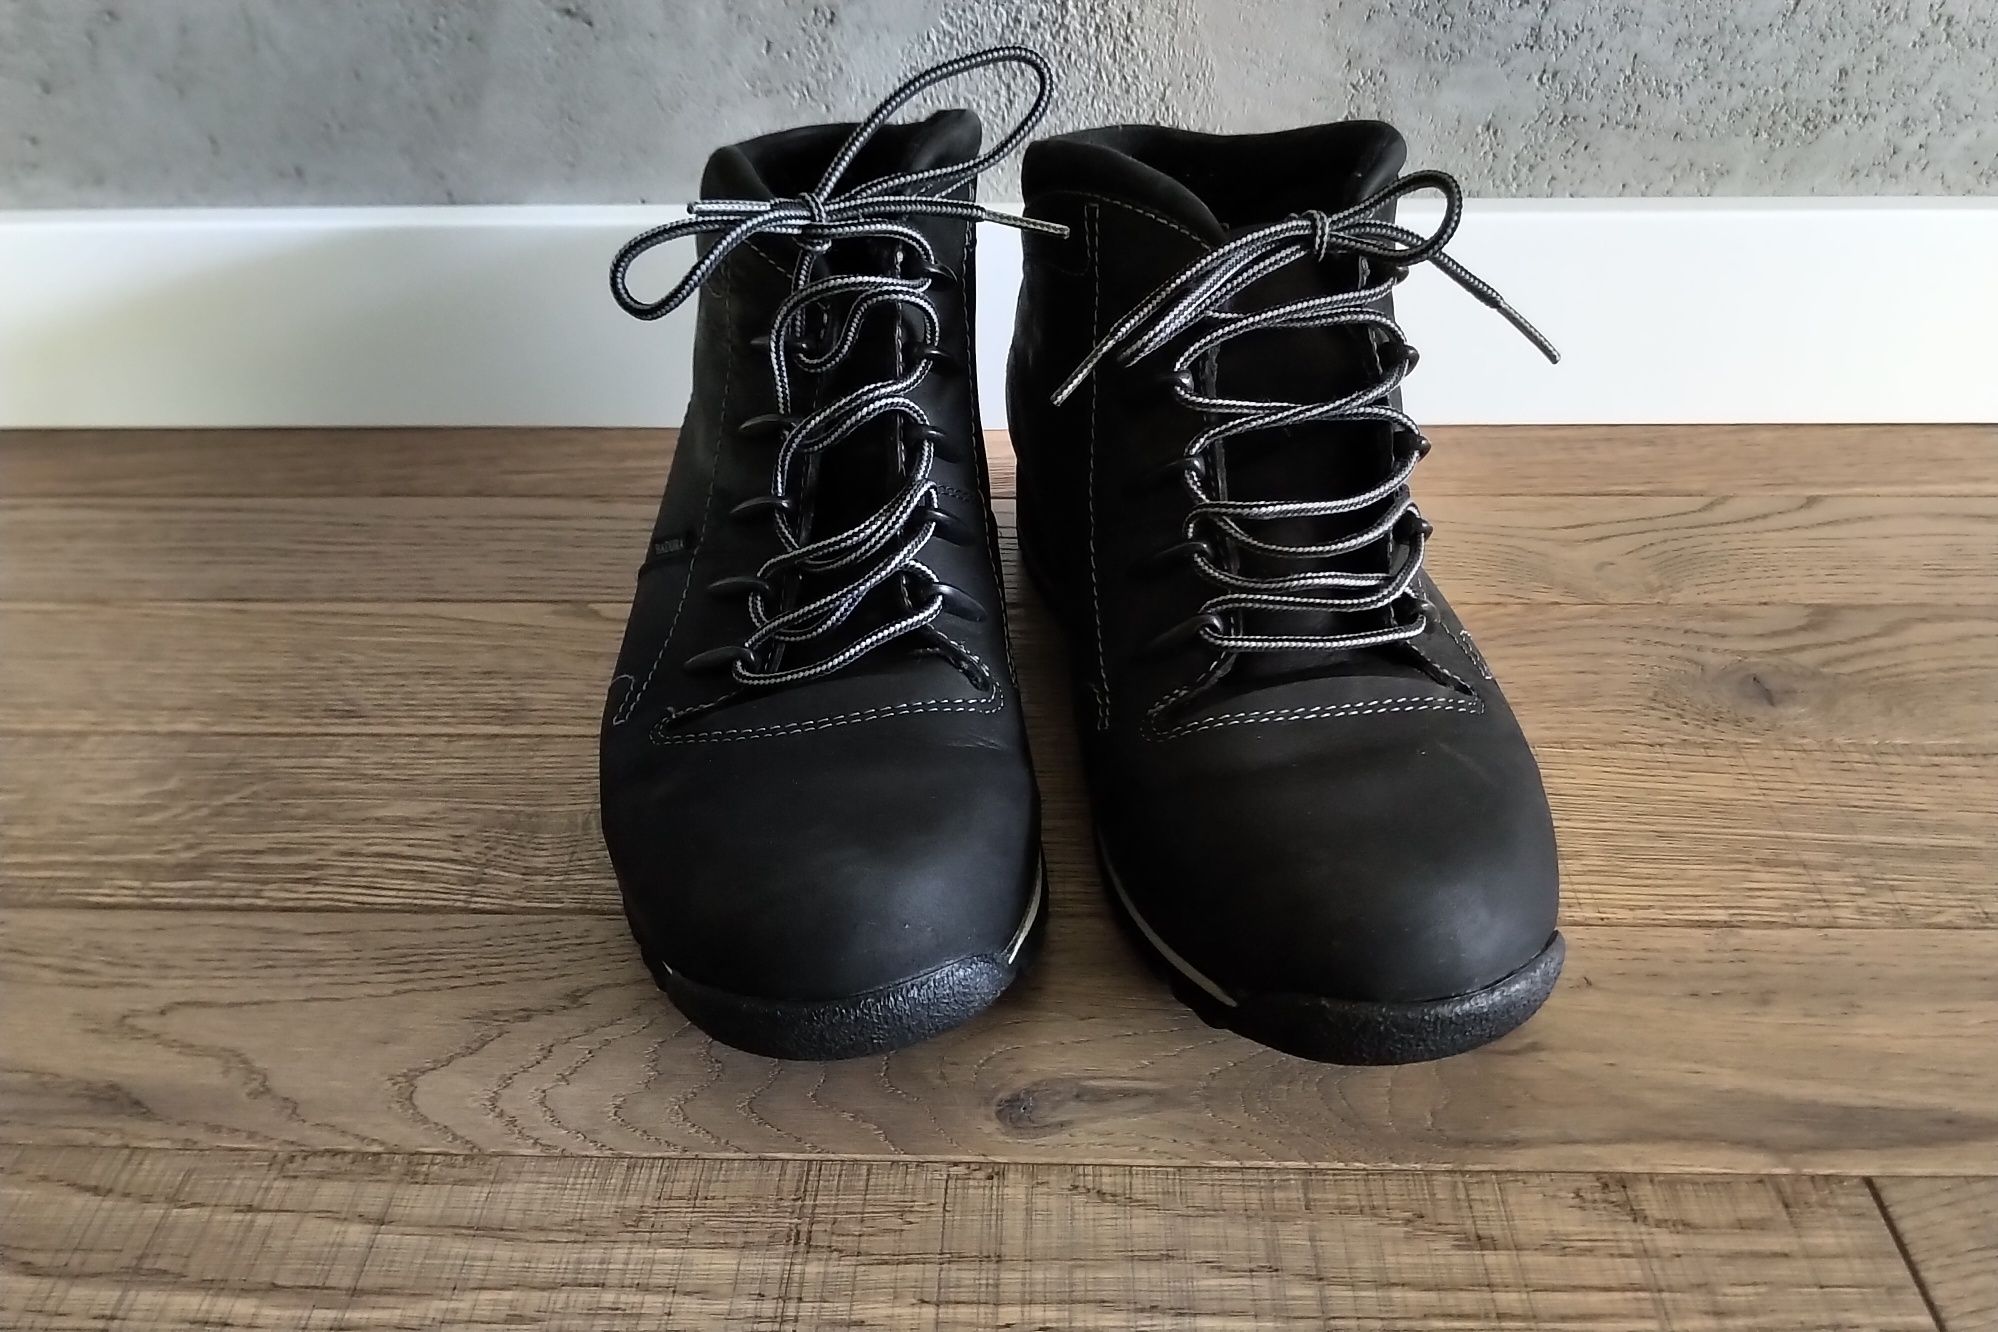 Badura buty męskie 42 czarne wysokie półbuty zimowe skórzane